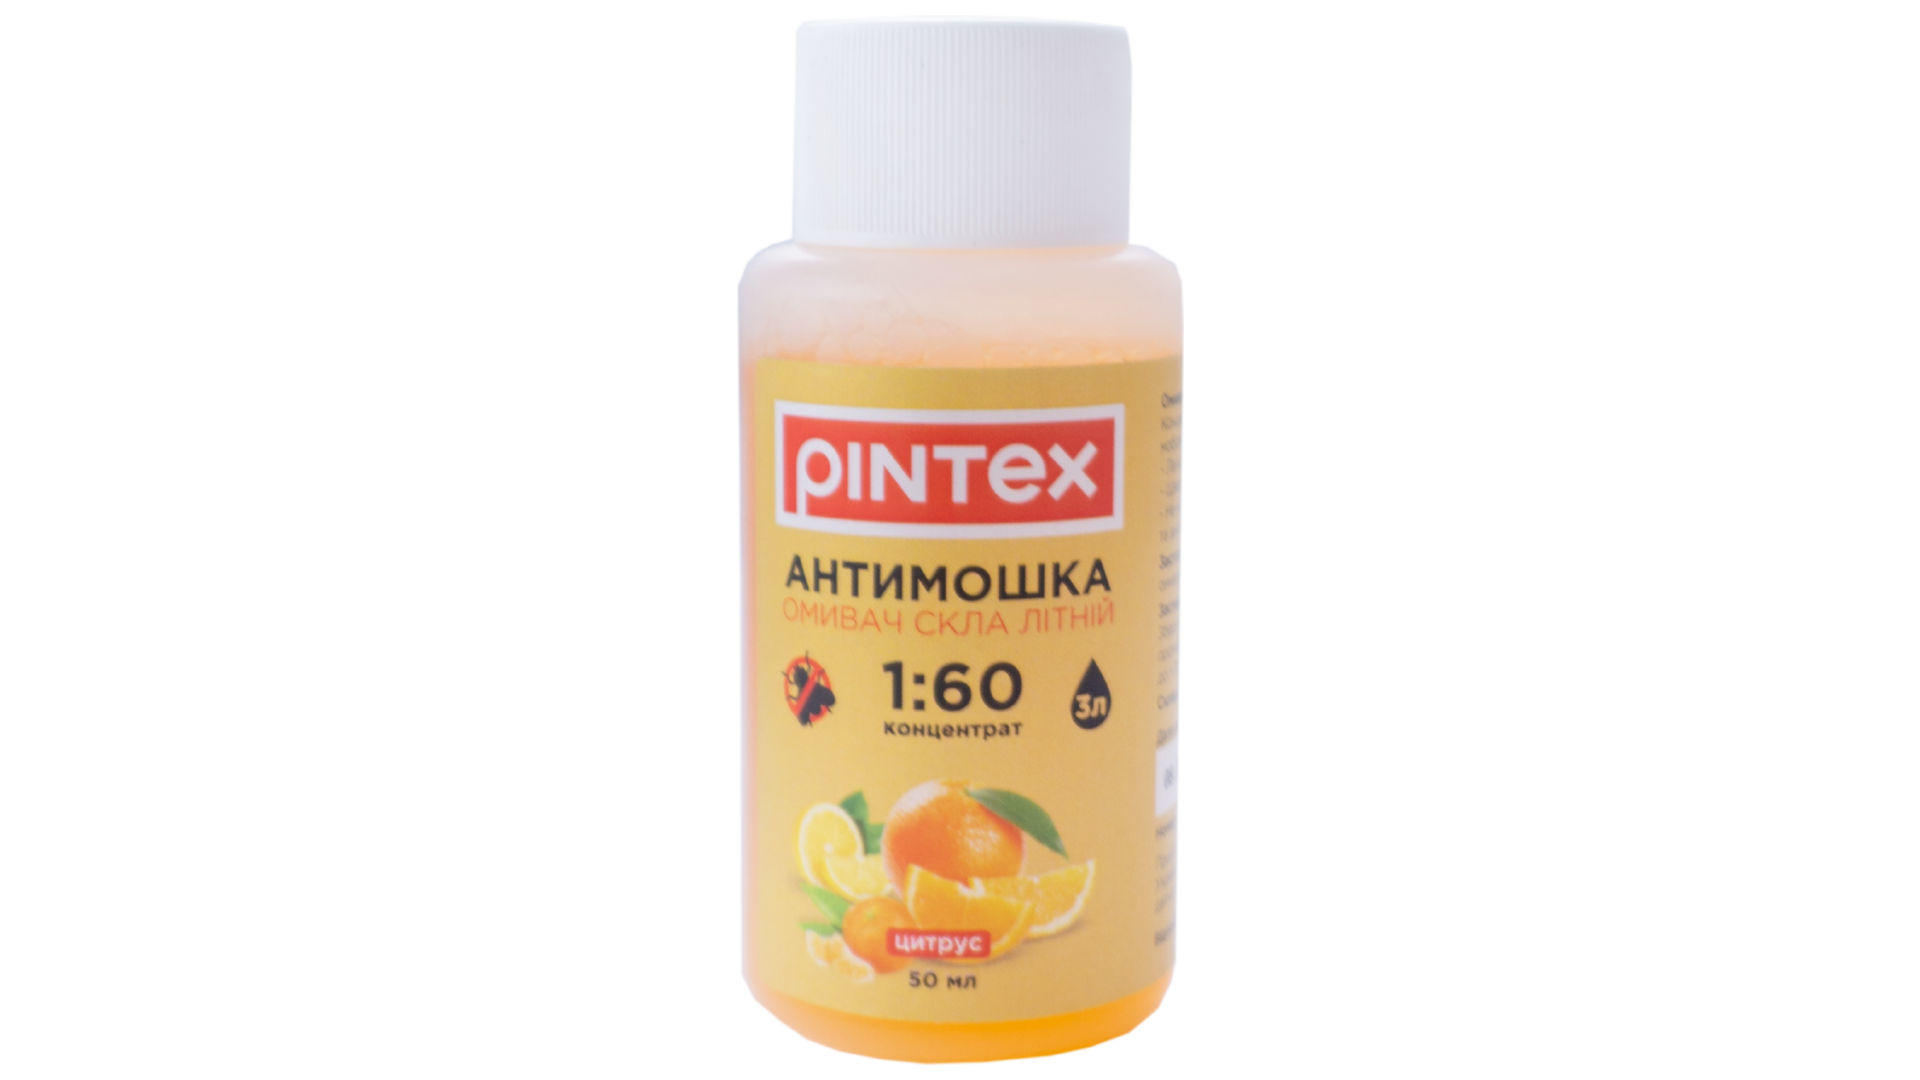 Омыватель стекла антимошка Pintex - 50 мл 1:60 цитрус 3